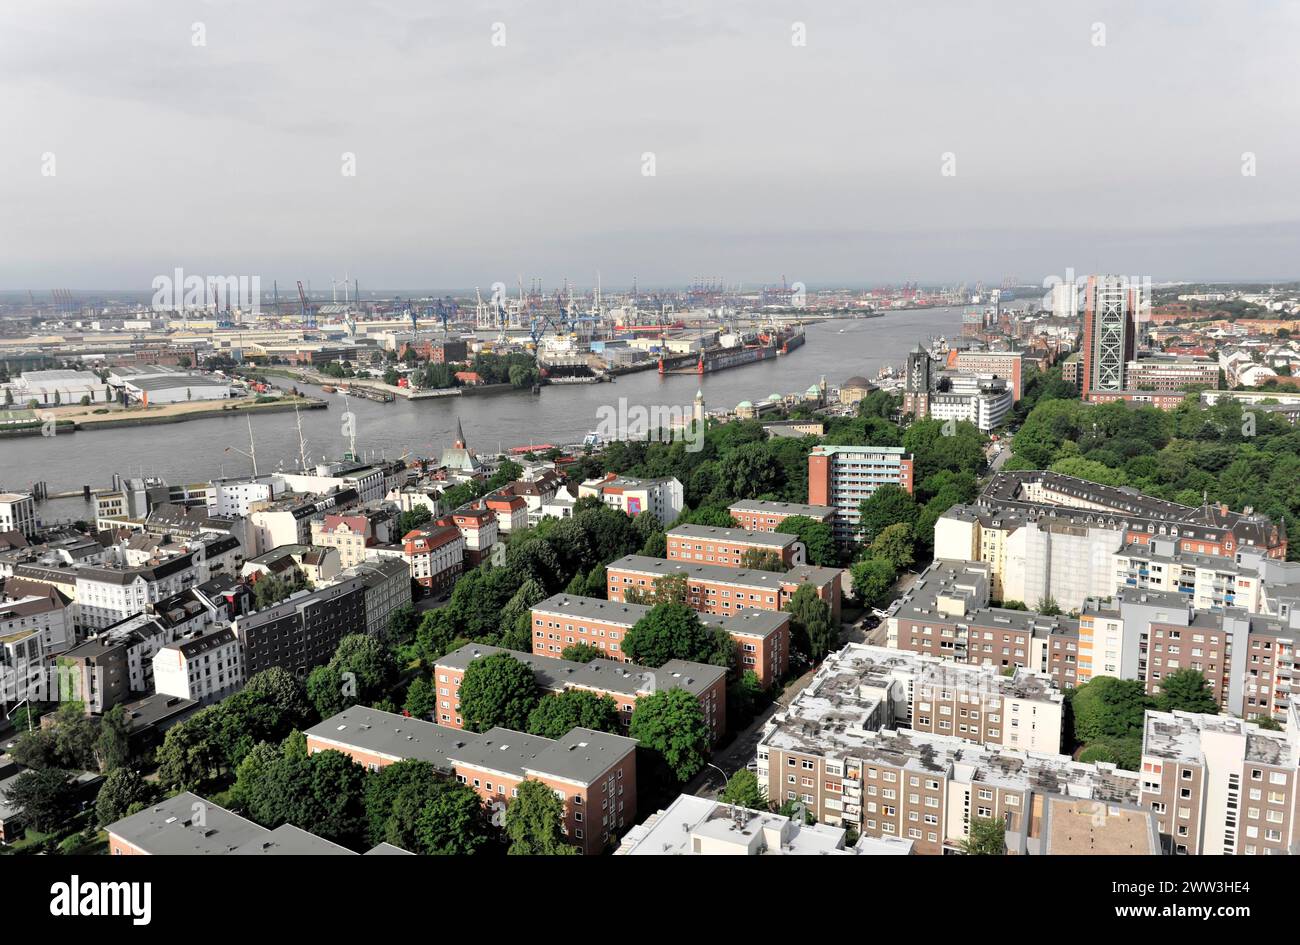 Vue panoramique d'une ville sur l'eau avec port et bateaux, Hambourg, ville hanséatique de Hambourg, Allemagne Banque D'Images